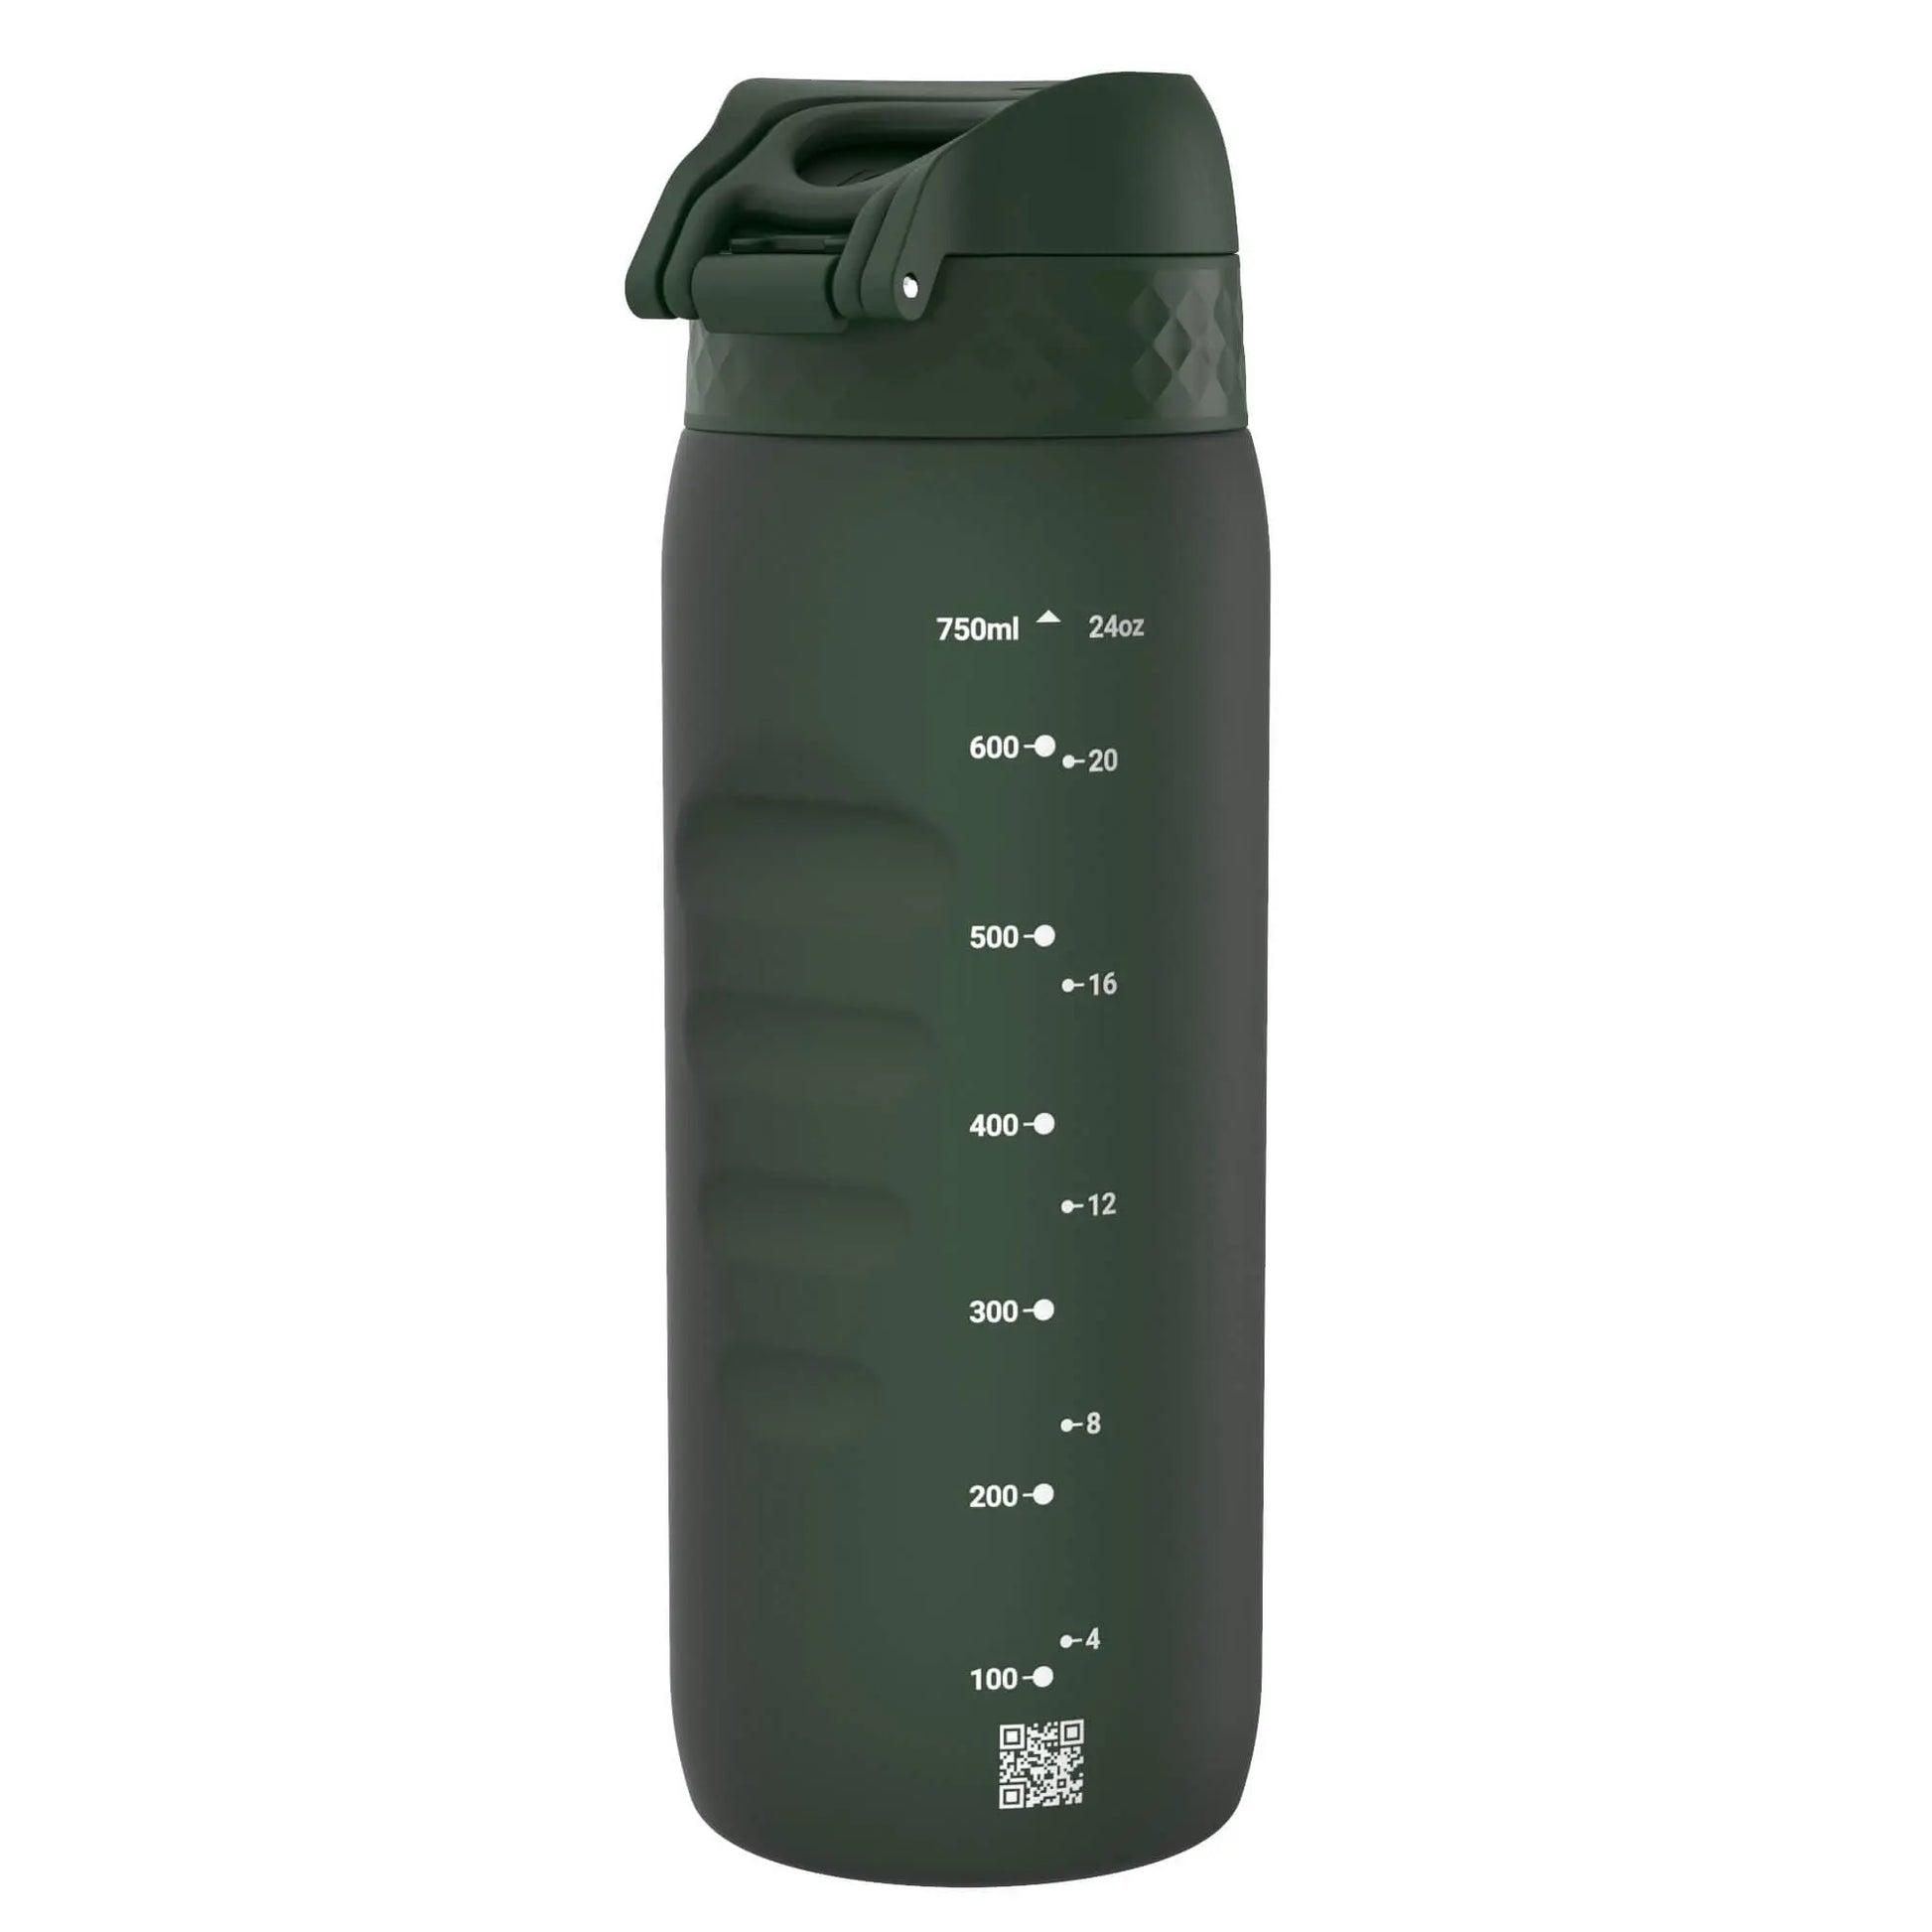 Leak Proof Water Bottle, Recyclon™, Dark Green, 750ml (24oz) Ion8